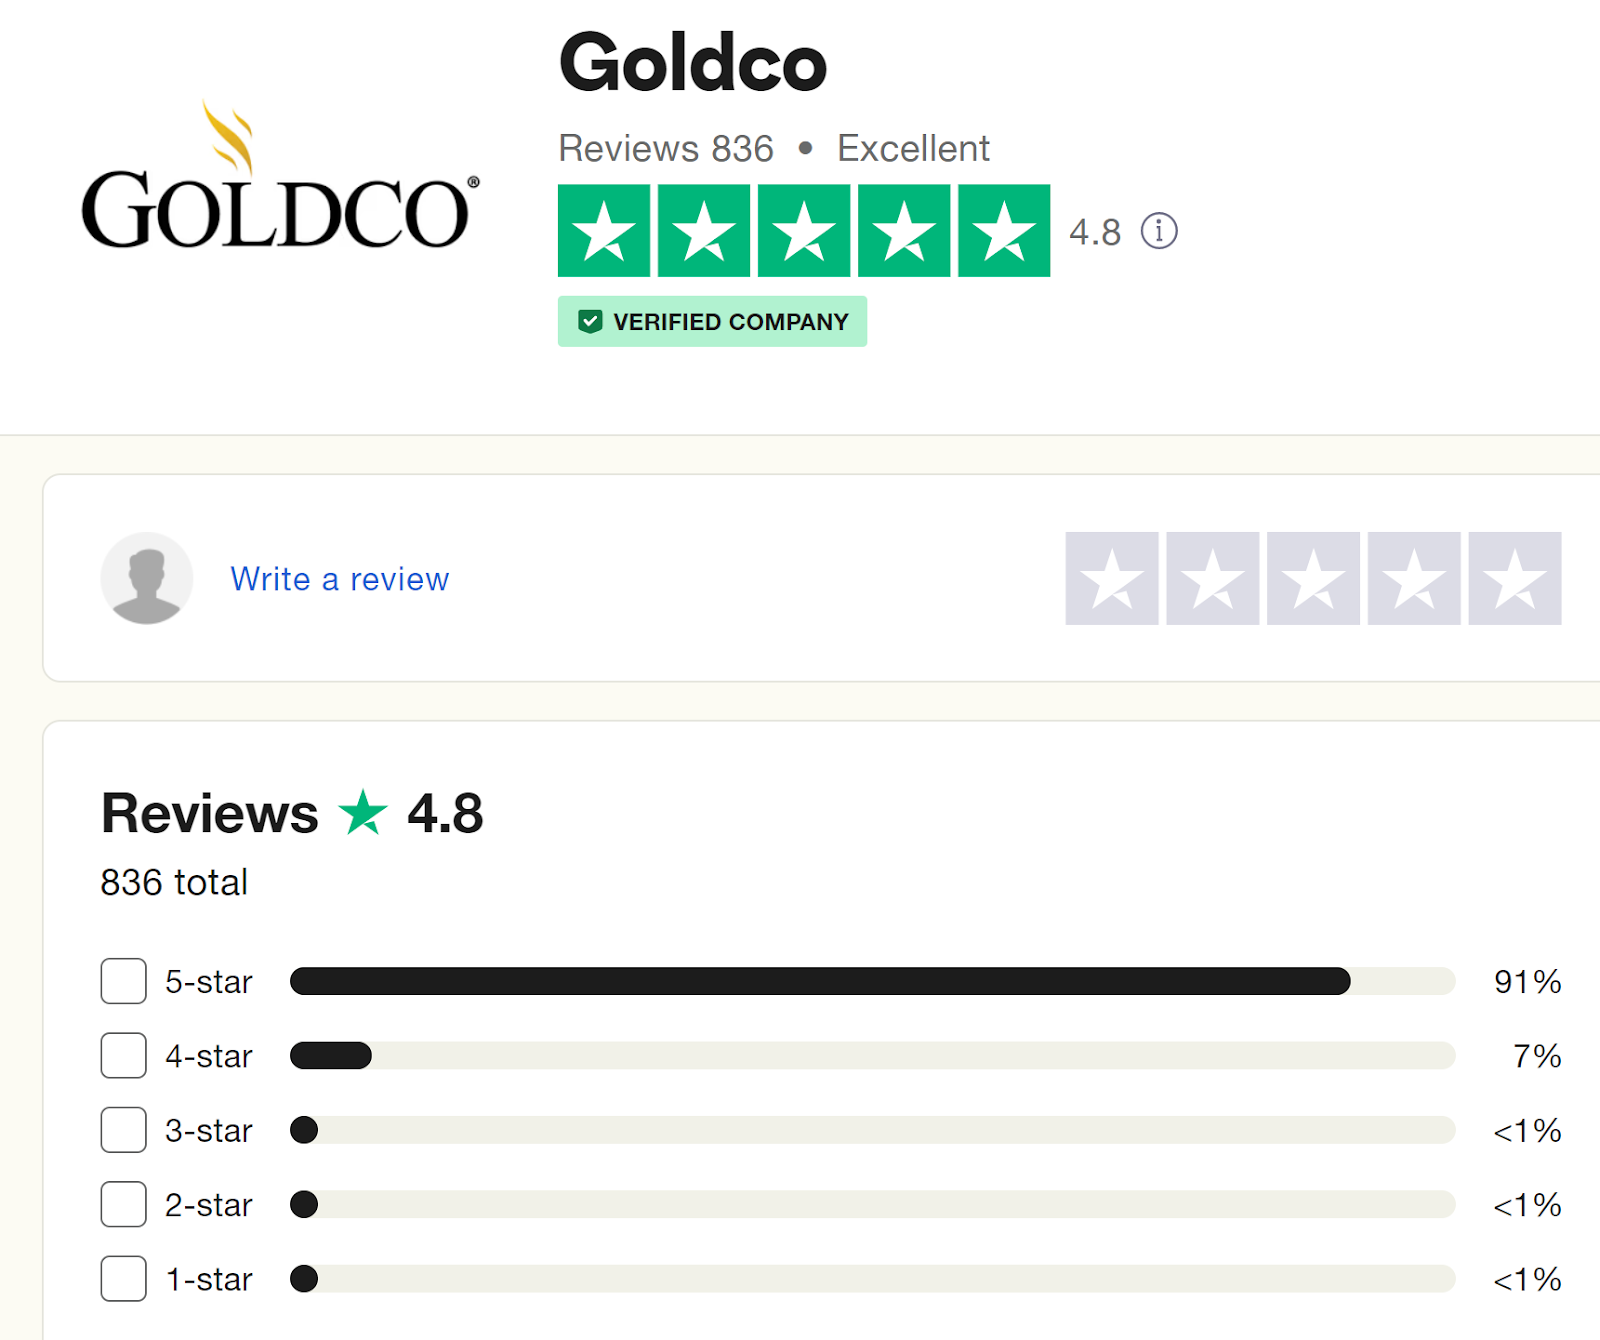 Goldco reviews & ratings on Trustpilot